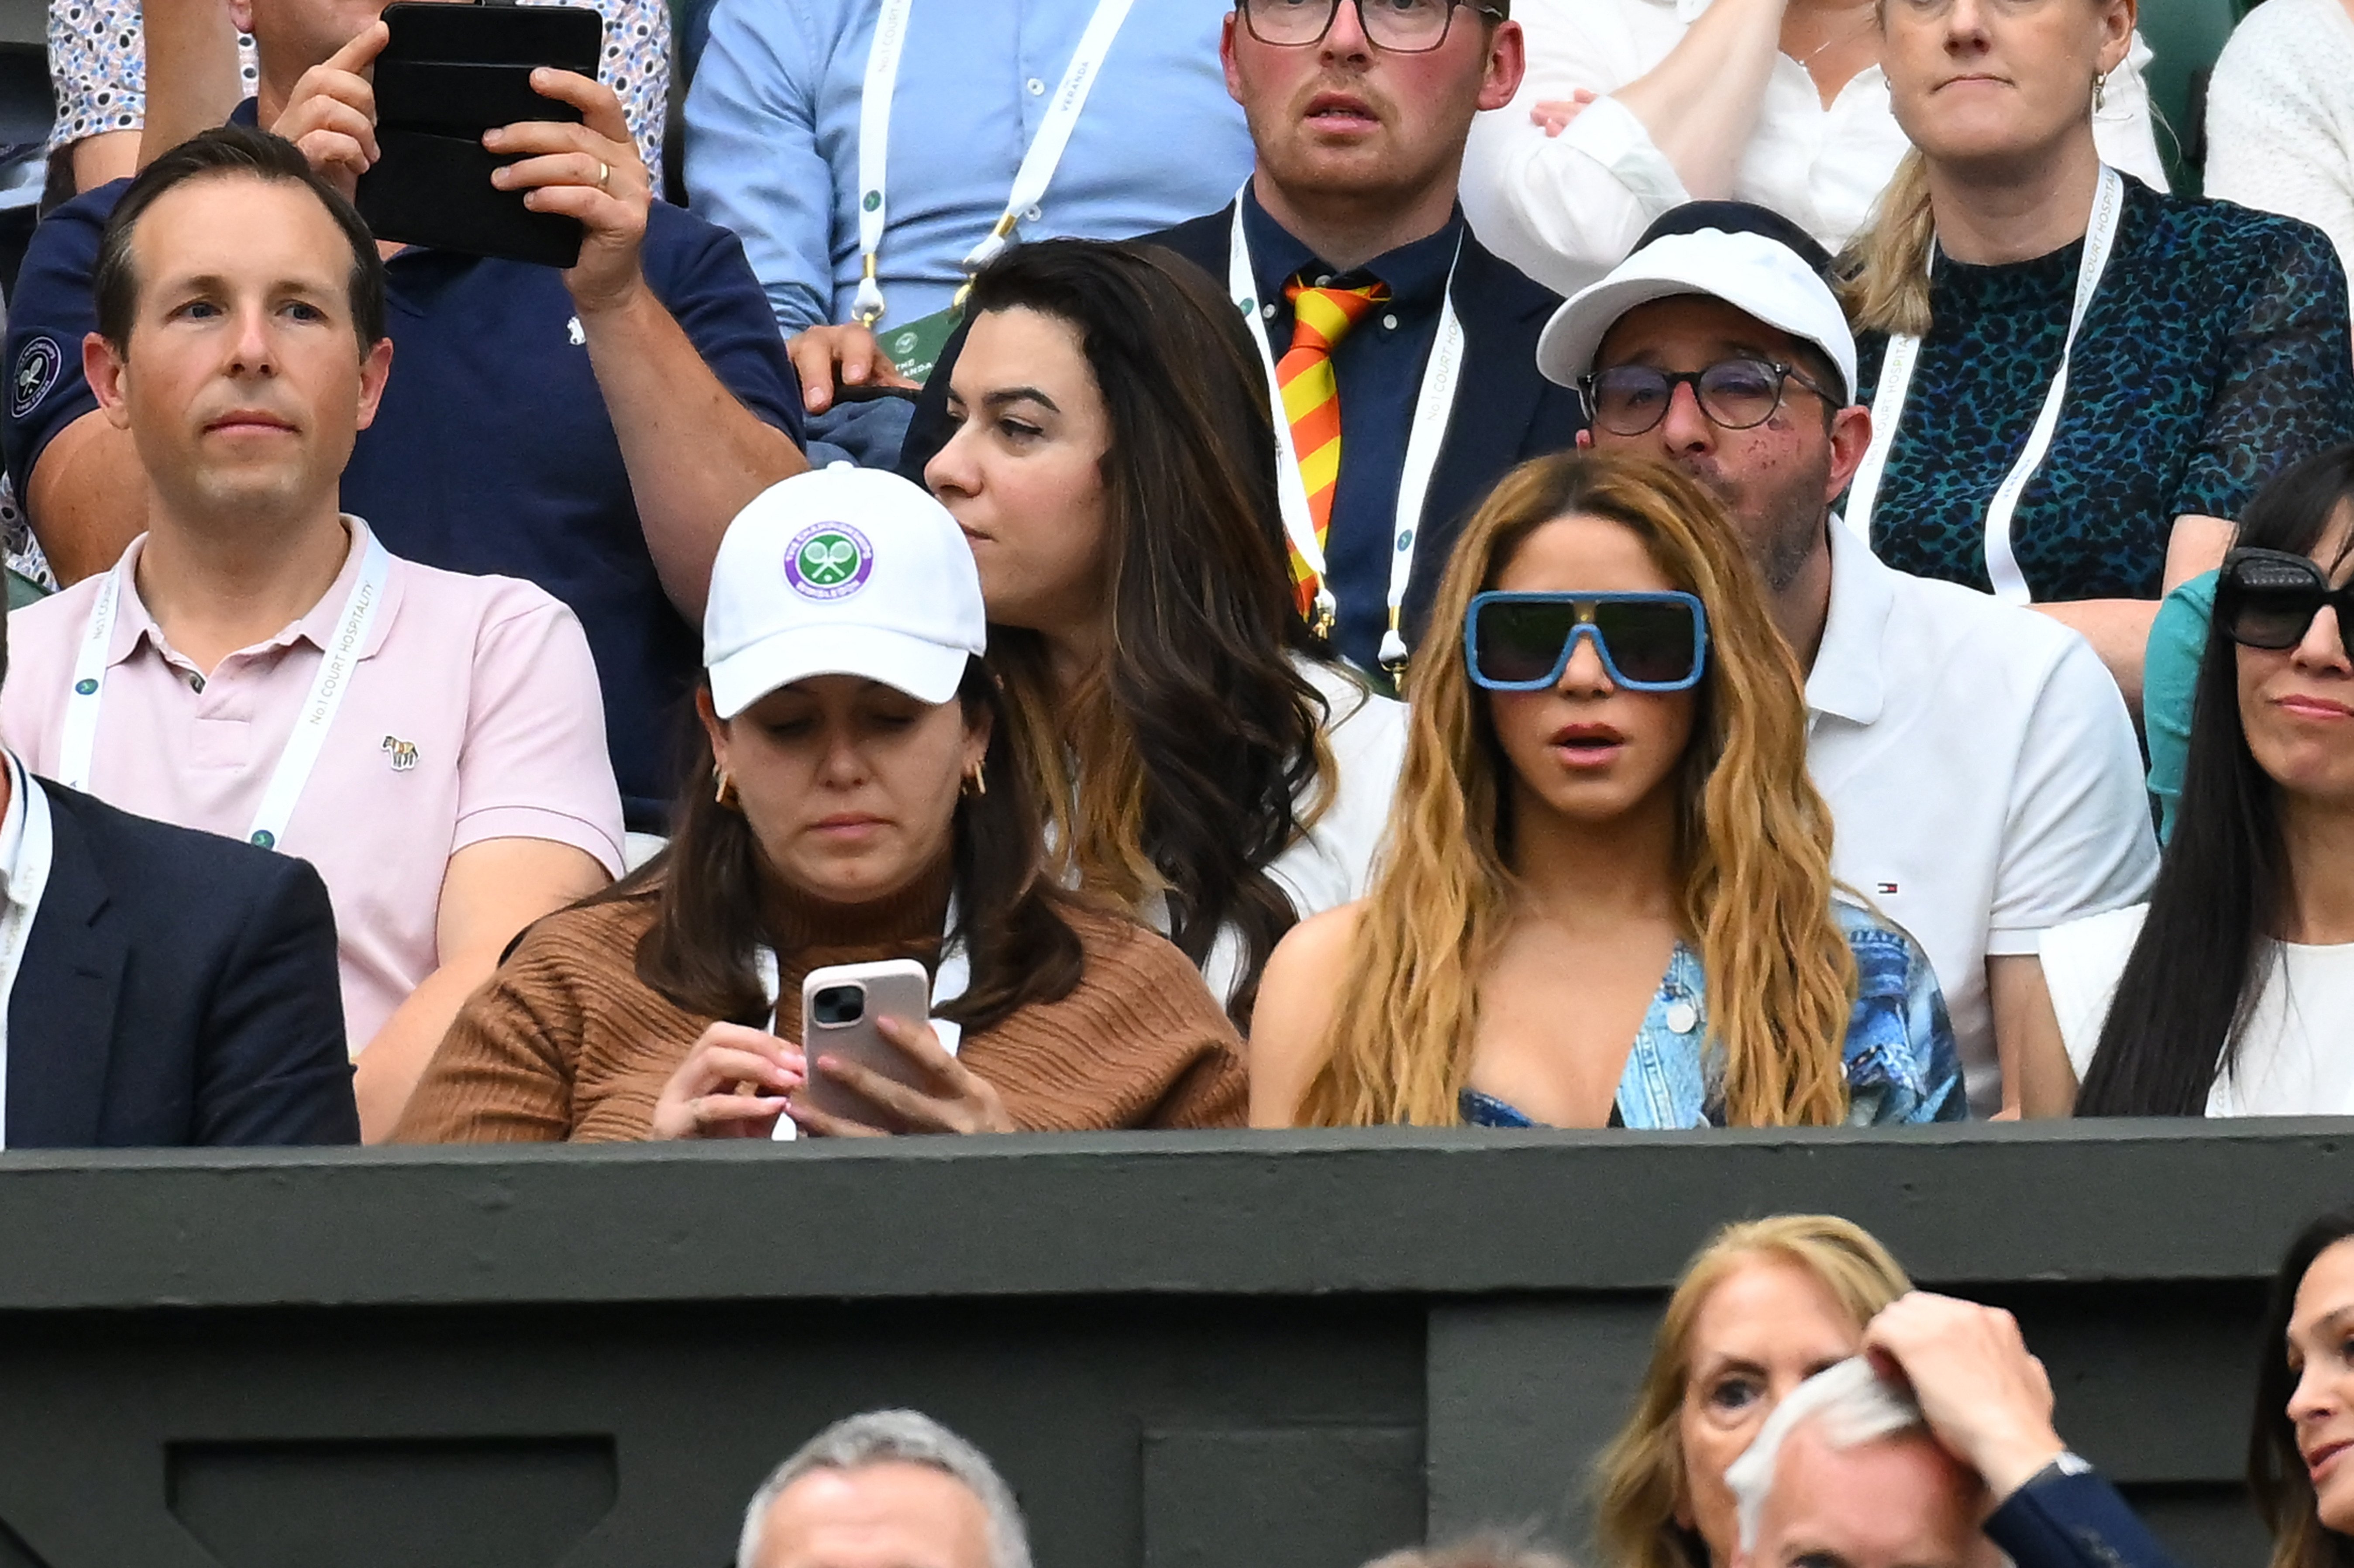 La imatge de Lewis Hamilton en un iot, amb dues dones: els fans de Shakira, irats